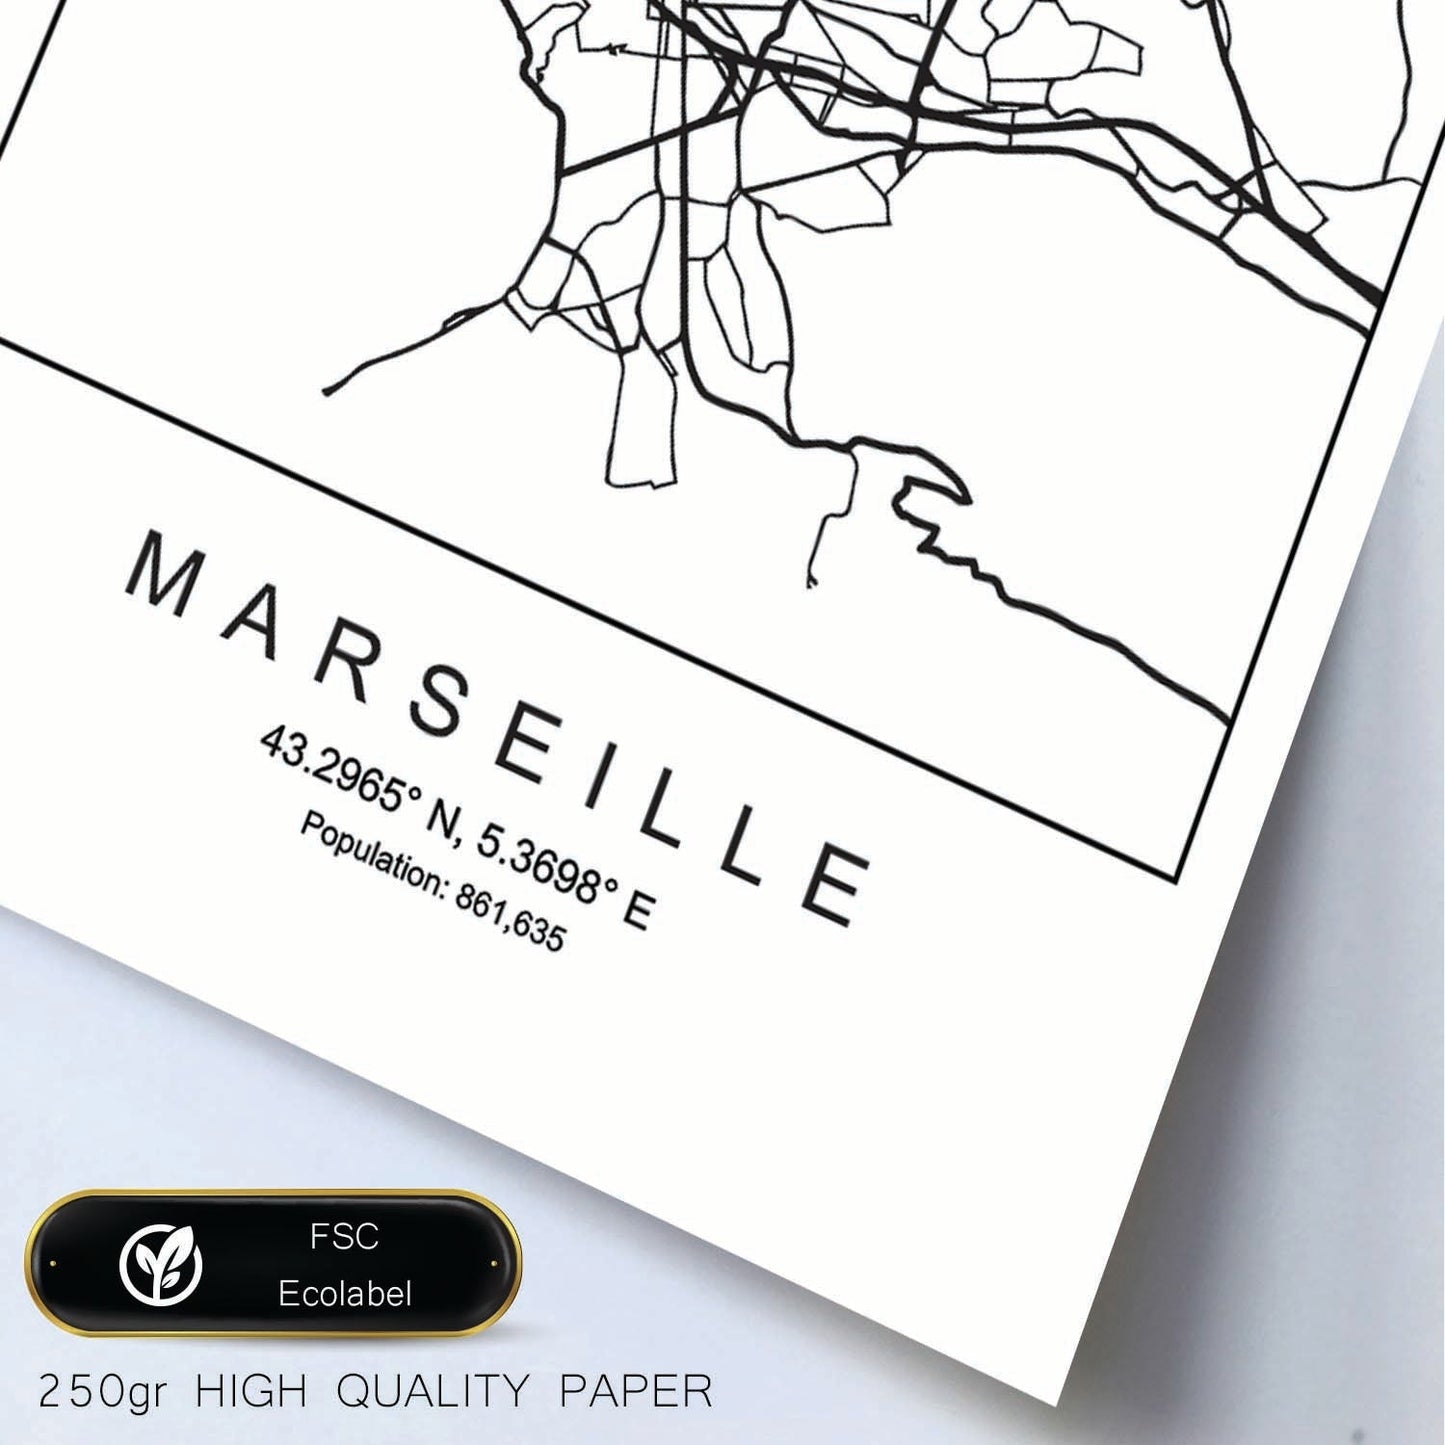 Lámina mapa de la ciudad Marseille estilo nordico en blanco y negro.-Artwork-Nacnic-Nacnic Estudio SL